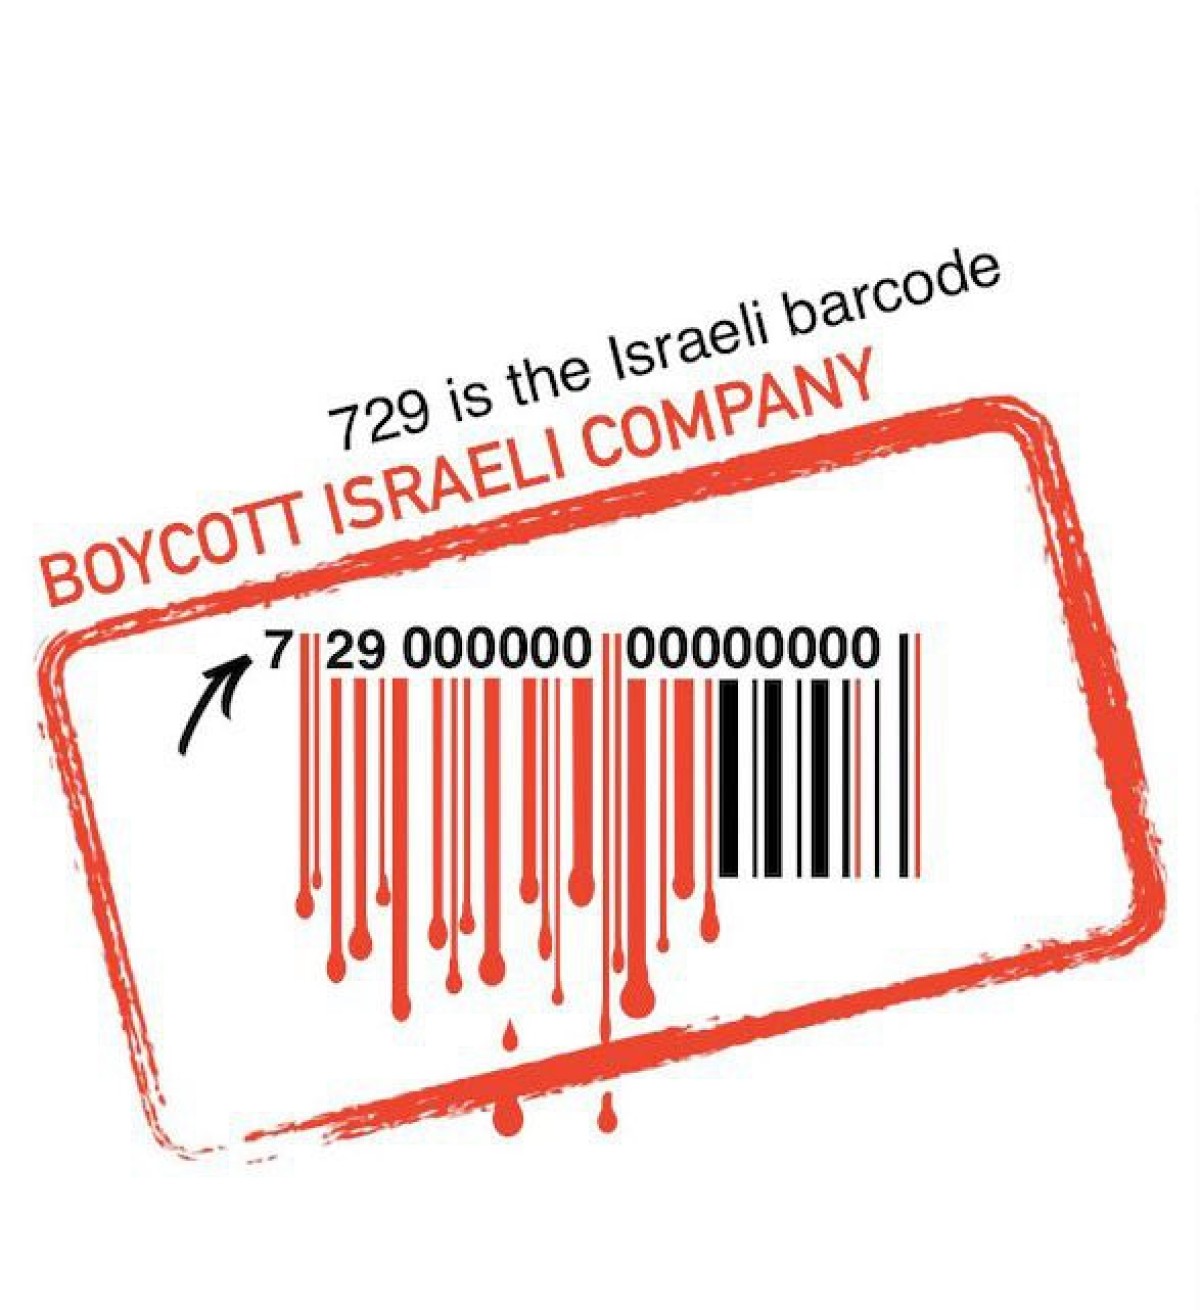 729 is the Israeli barcode BOYCOTT ISRAELI COMPANY